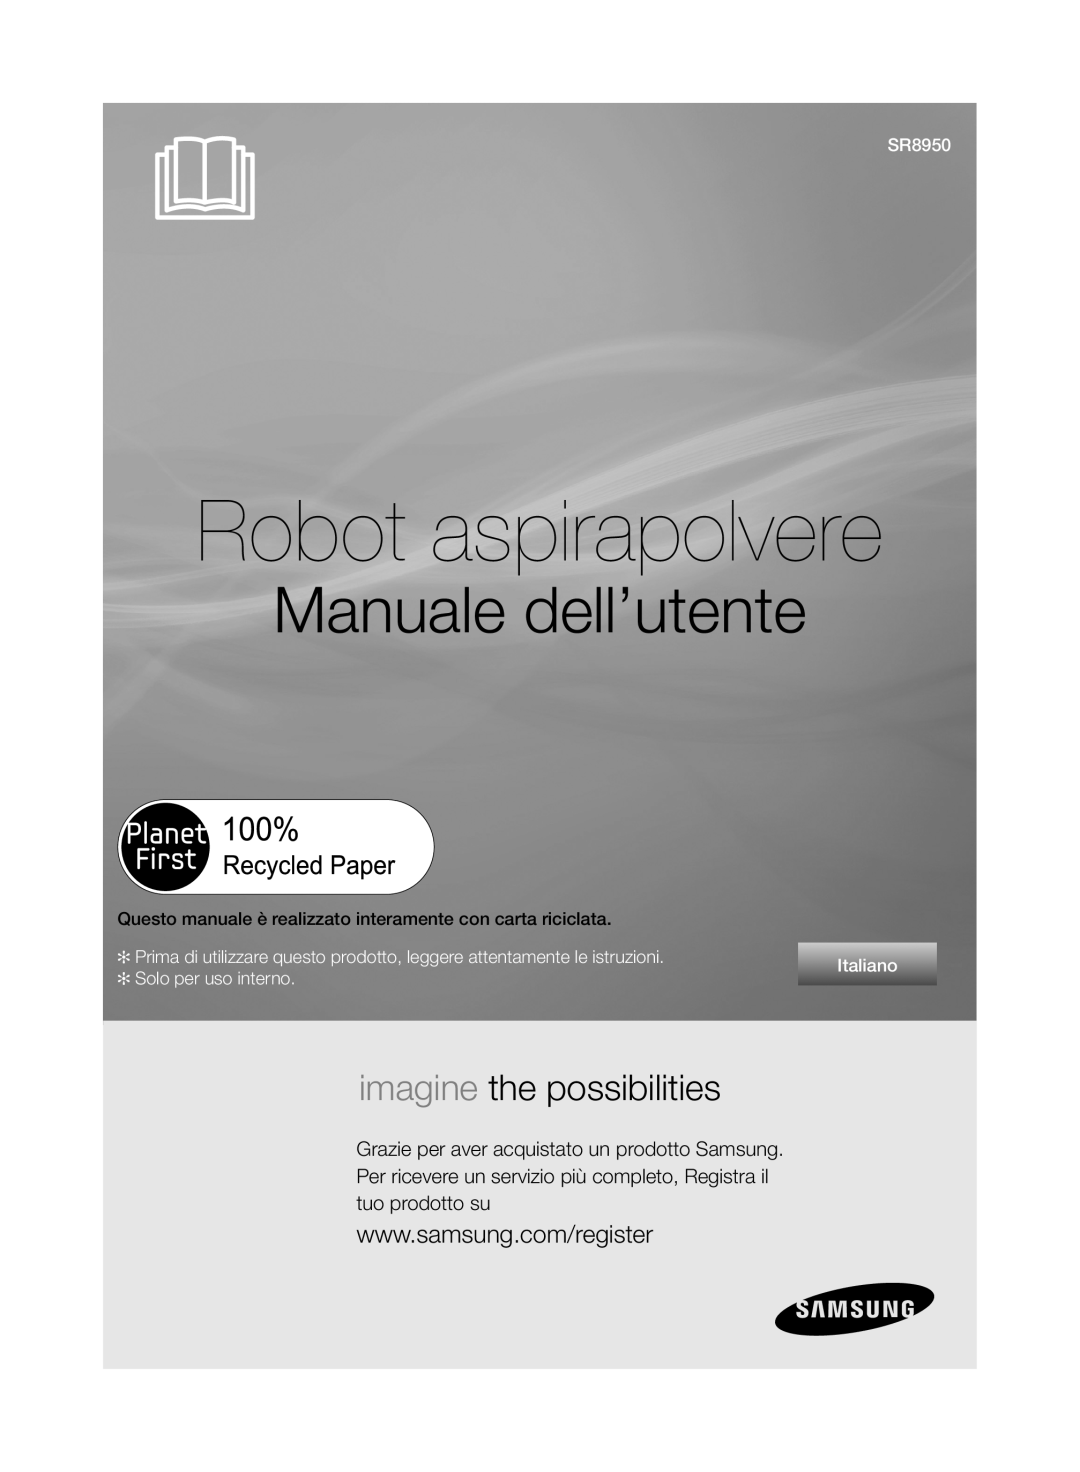 Samsung VCR8950L3B/XEG manual Robot aspirapolvere, Manuale dell’utente, imagine the possibilities, SR8950, Italiano 